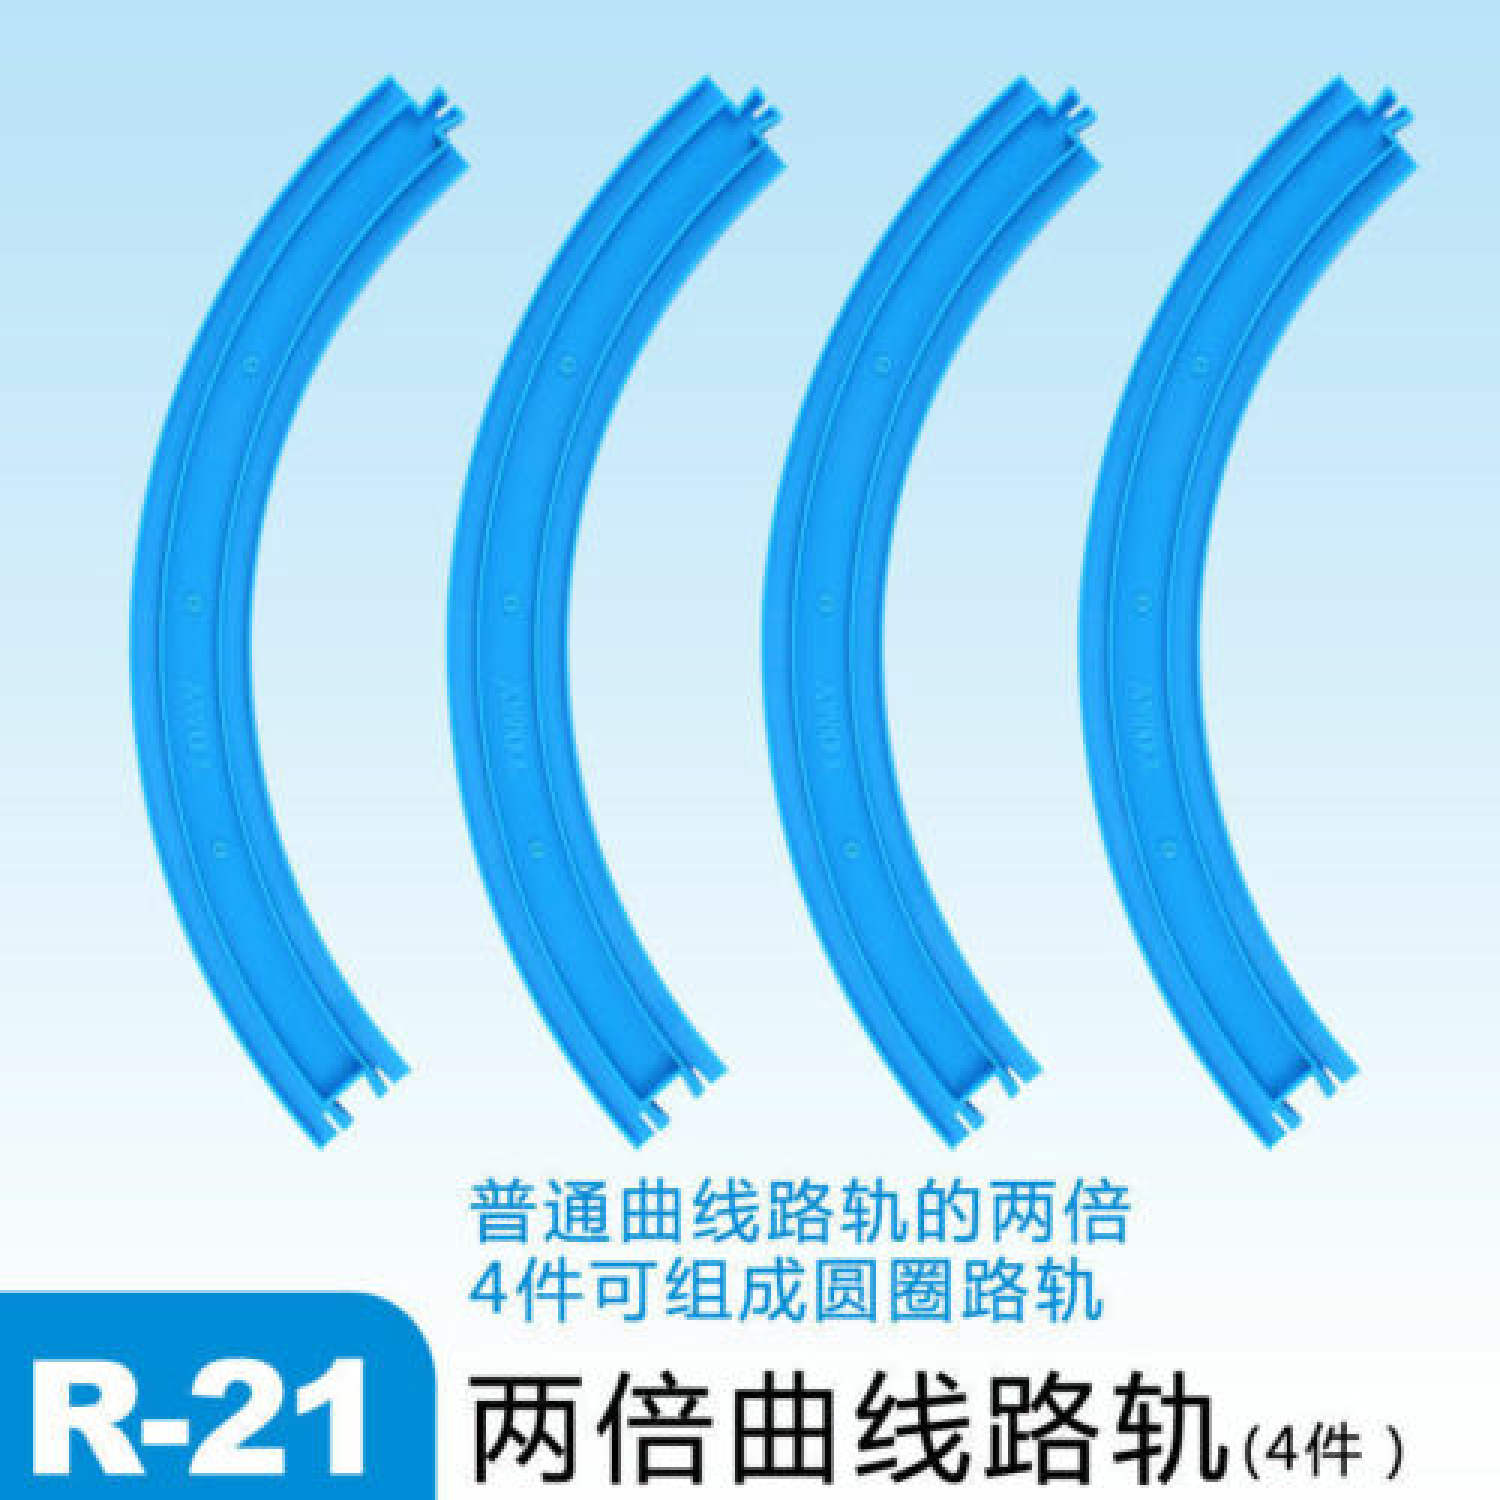 Đồ chơi mảnh hép đường ray hình vòng cung R-21 Double-Size Curve